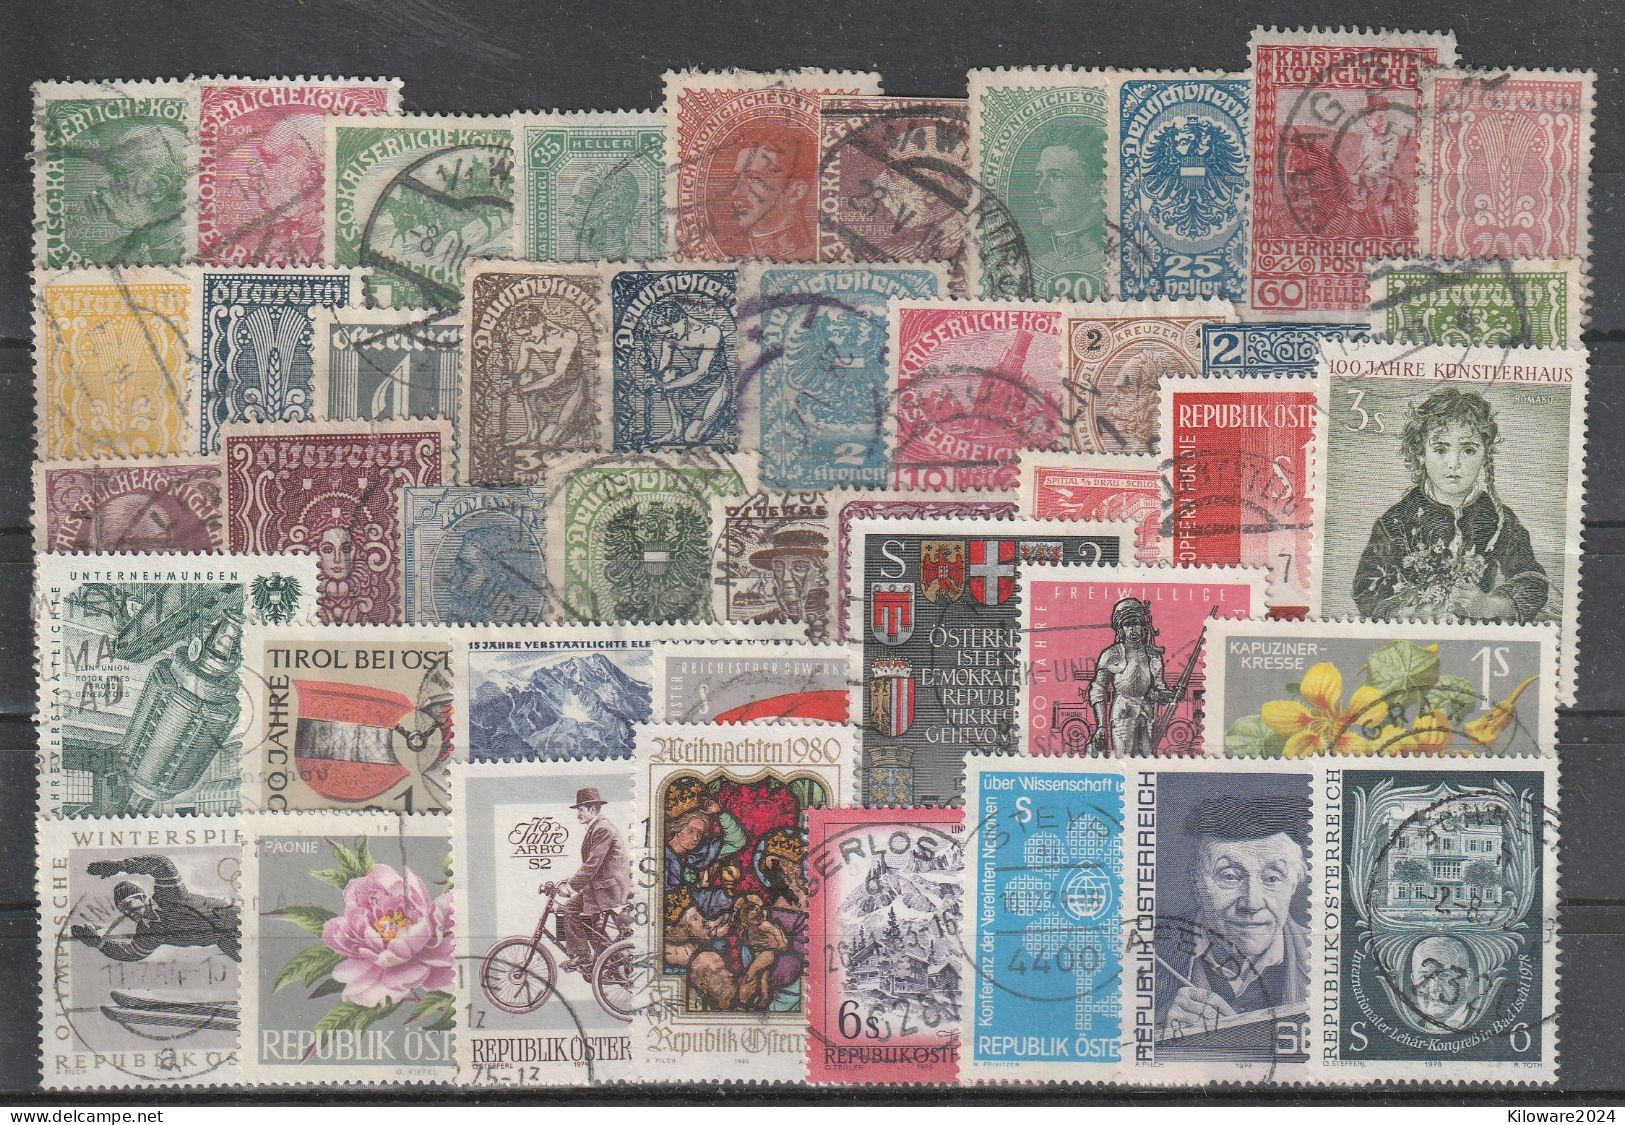 Österreich: Lot Mit  Versch. Werten,  Gestempelt.  (086) - Lots & Kiloware (mixtures) - Max. 999 Stamps